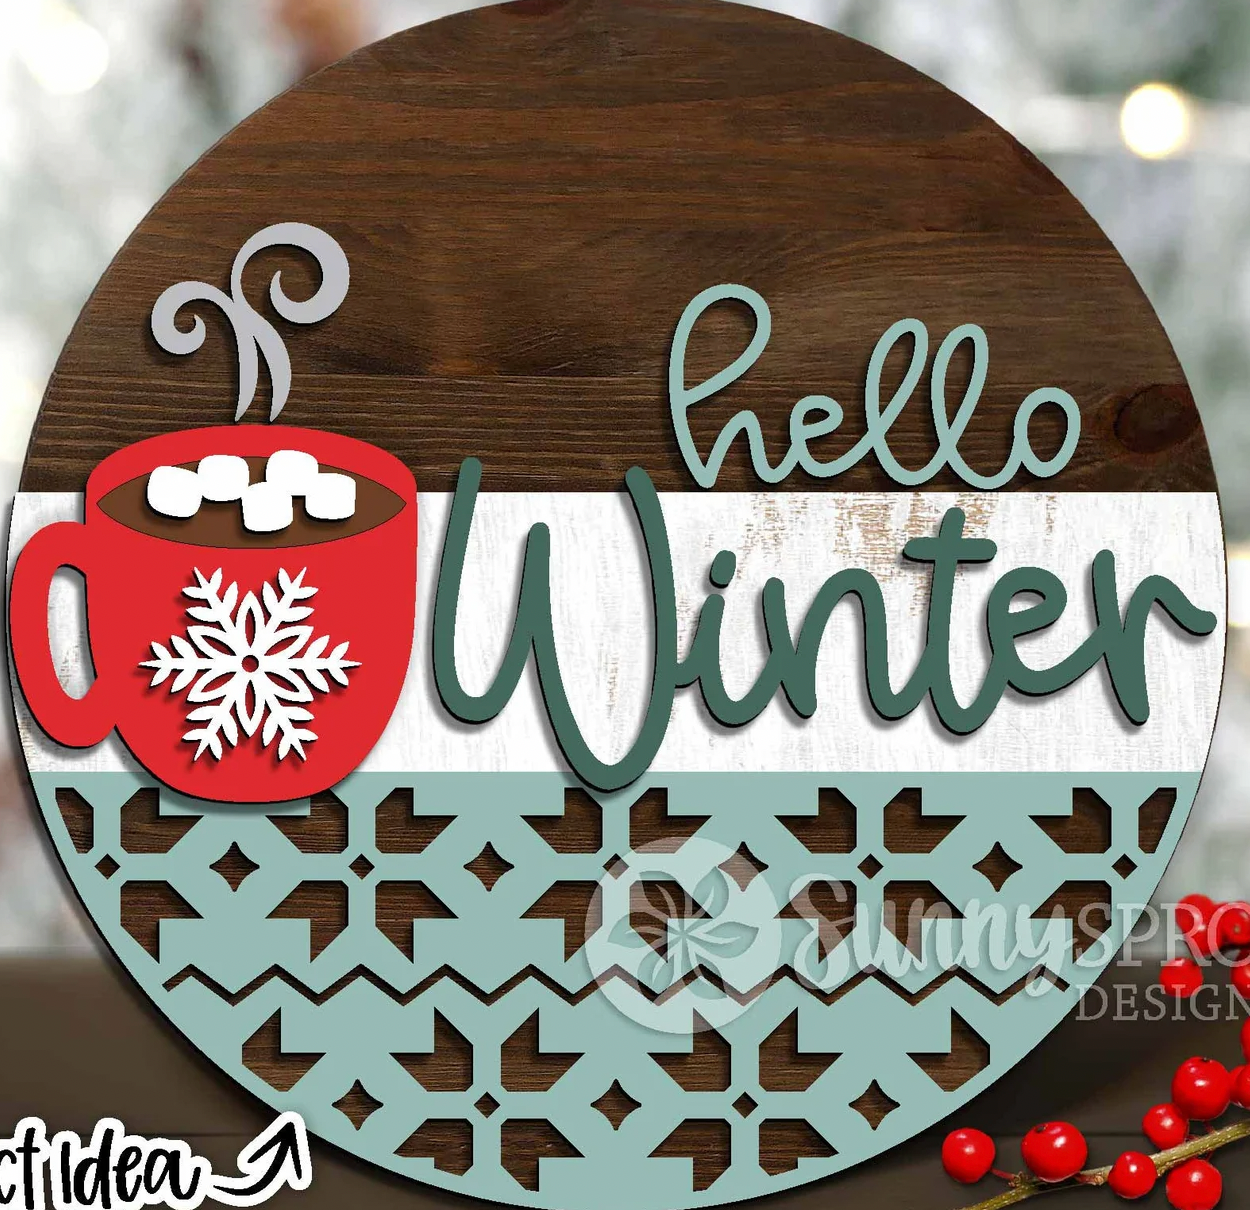 Hello Winter Hot Cocoa Door Hanger